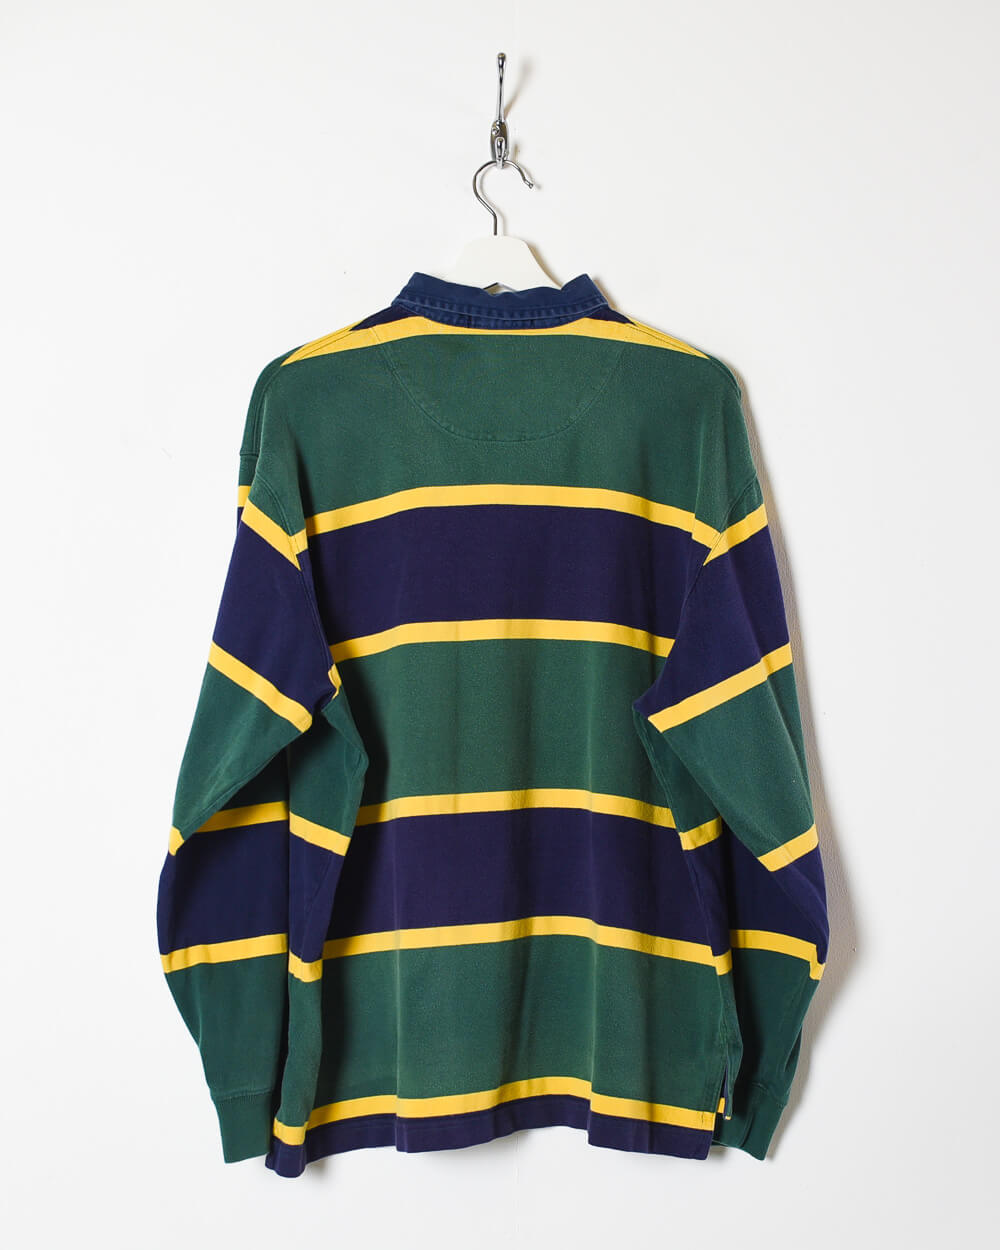 Green Ralph Lauren Rugby Shirt - Large 